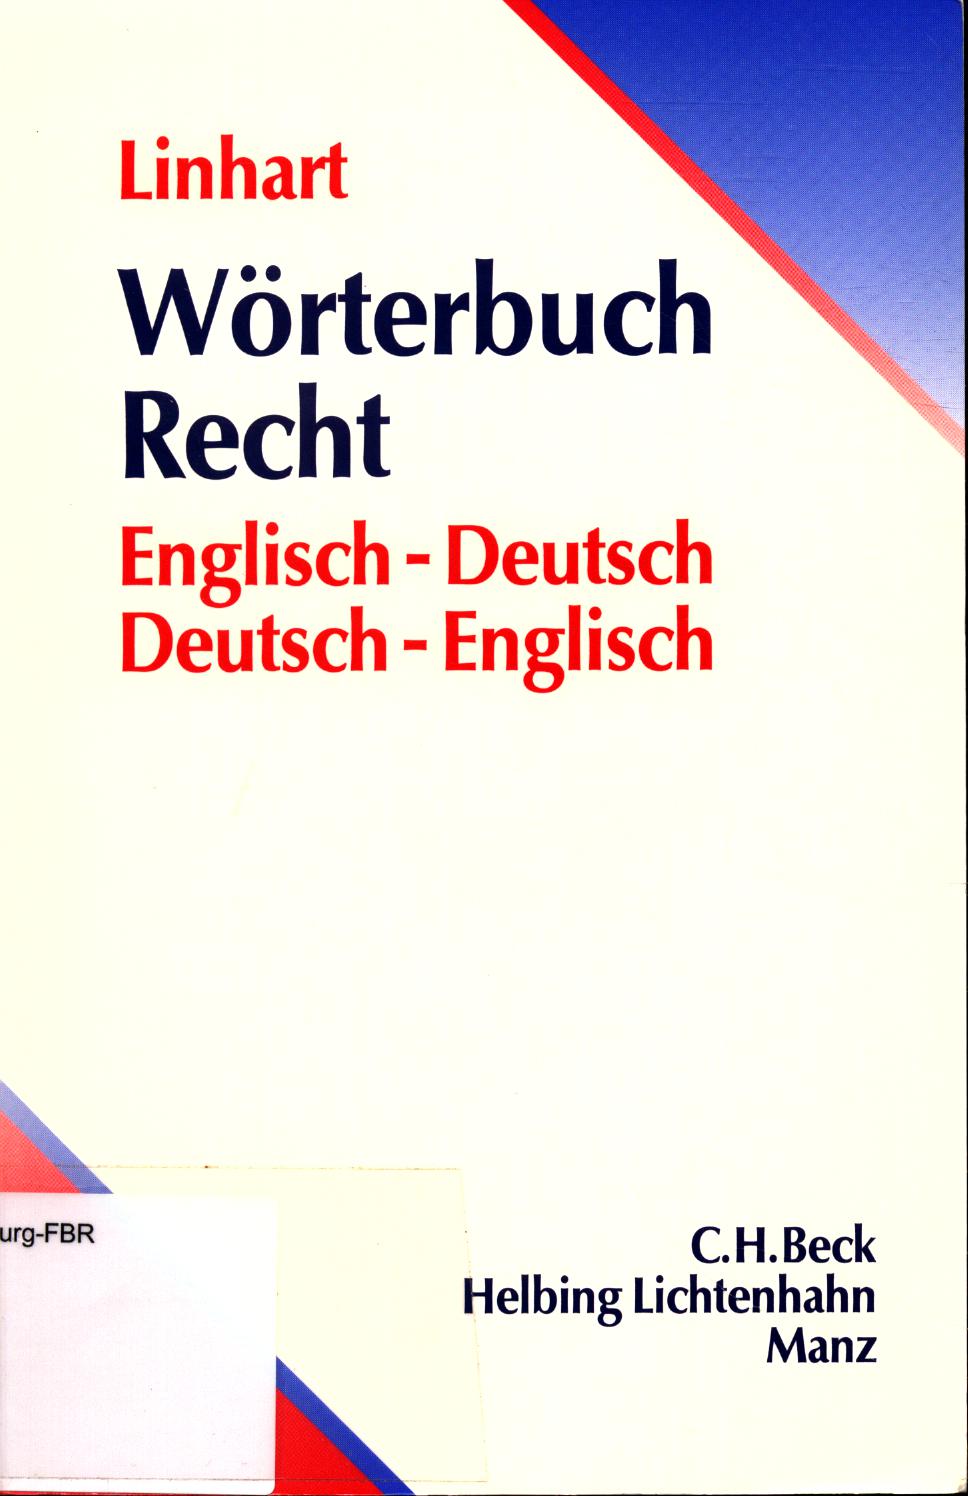 Wörterbuch Recht Englisch-Deutsch / Deutsch-Englisch - Linhart, Karin